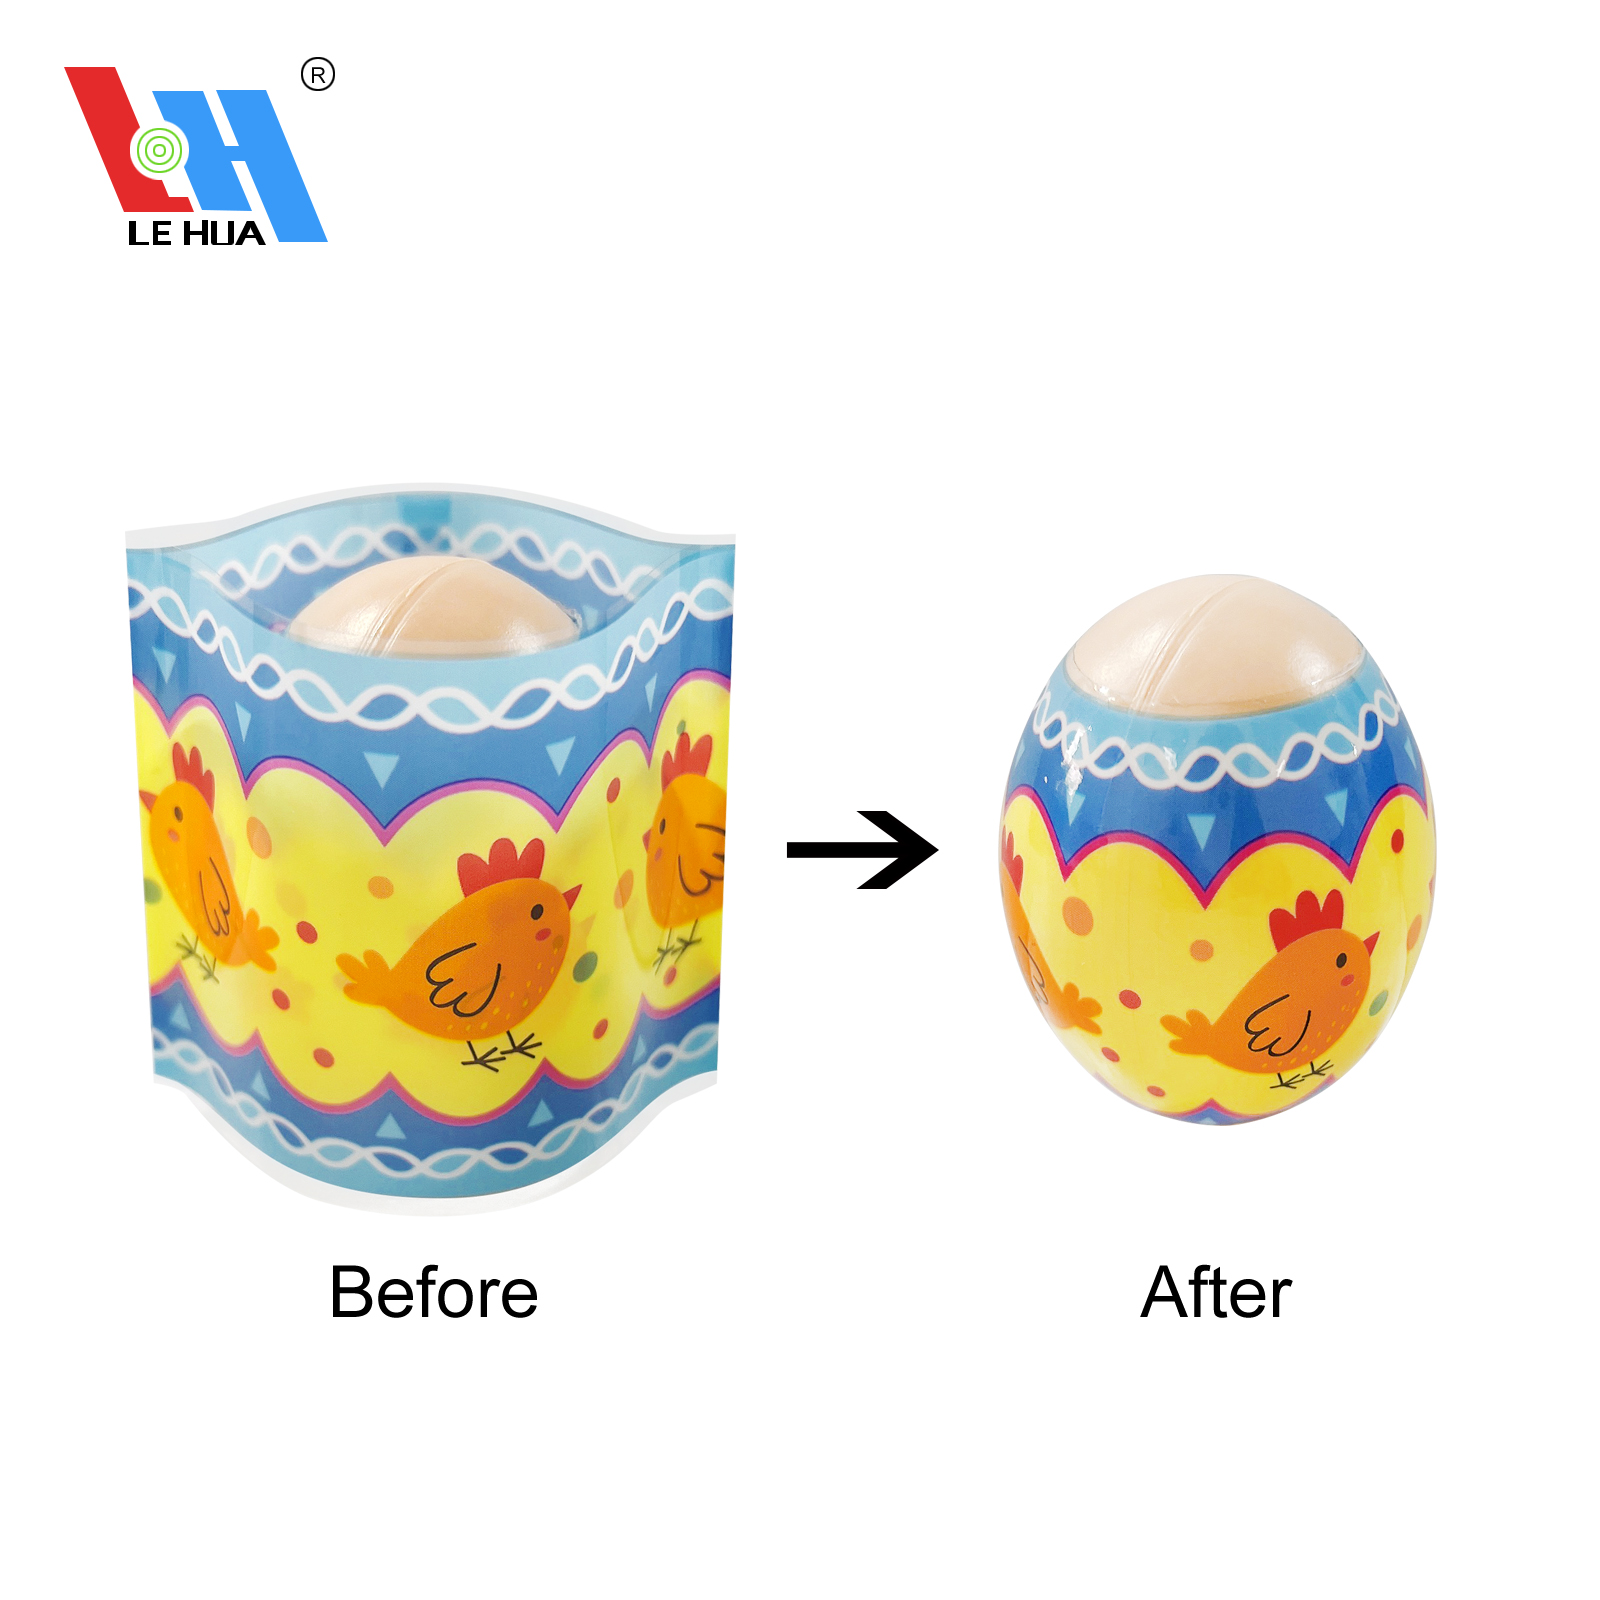 Easter Egg Shrink Wrap Decoration